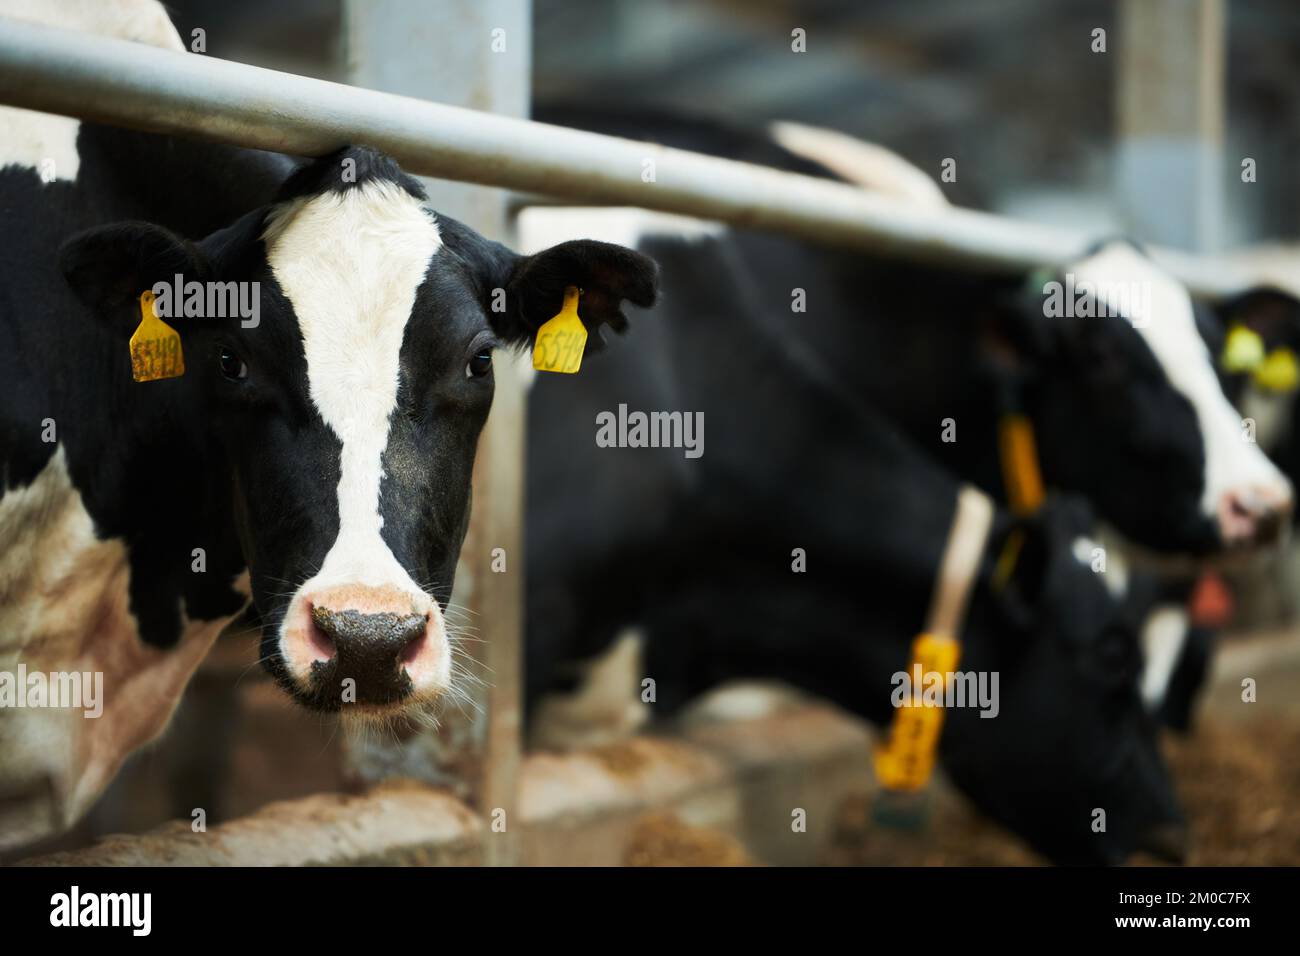 Vaca lechera de pura raza blanca y negra mirando la cámara mientras estaba de pie en el cowshed contra otro ganado comiendo comida del comedero Foto de stock